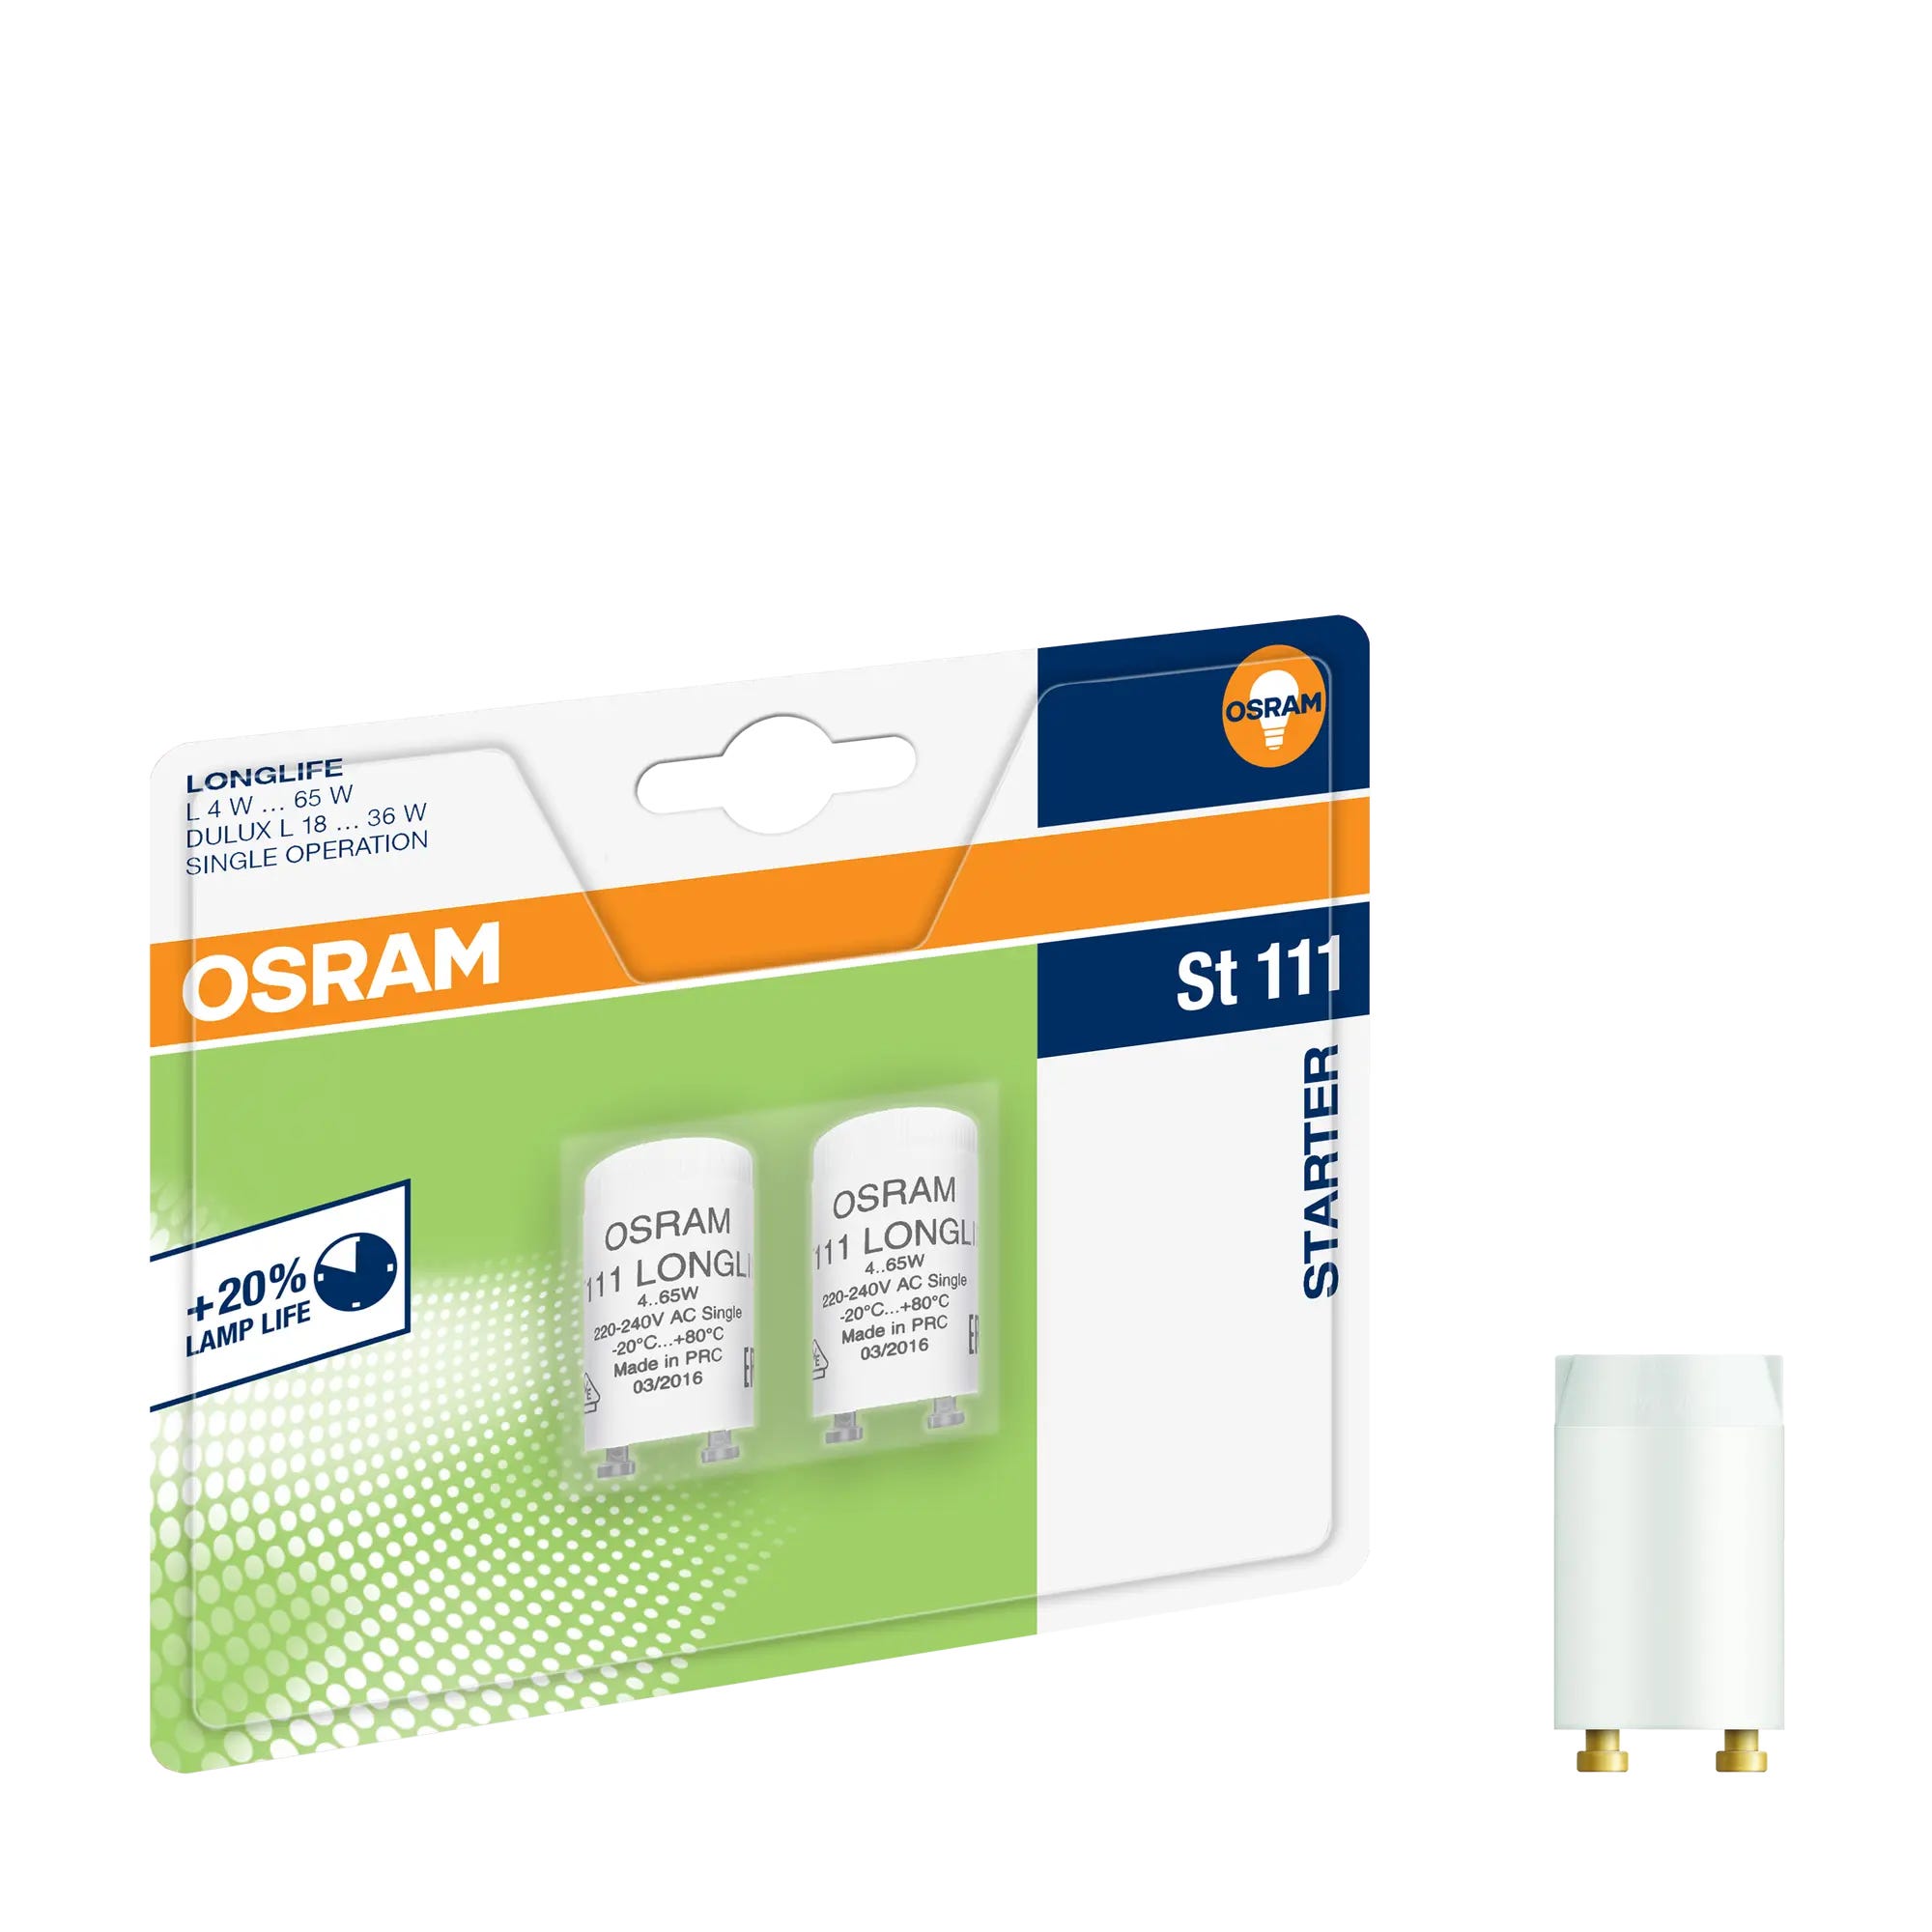 OSRAM Fluorescent Tube St 111 Starter 4–65W 220–240V AC Single Operation 